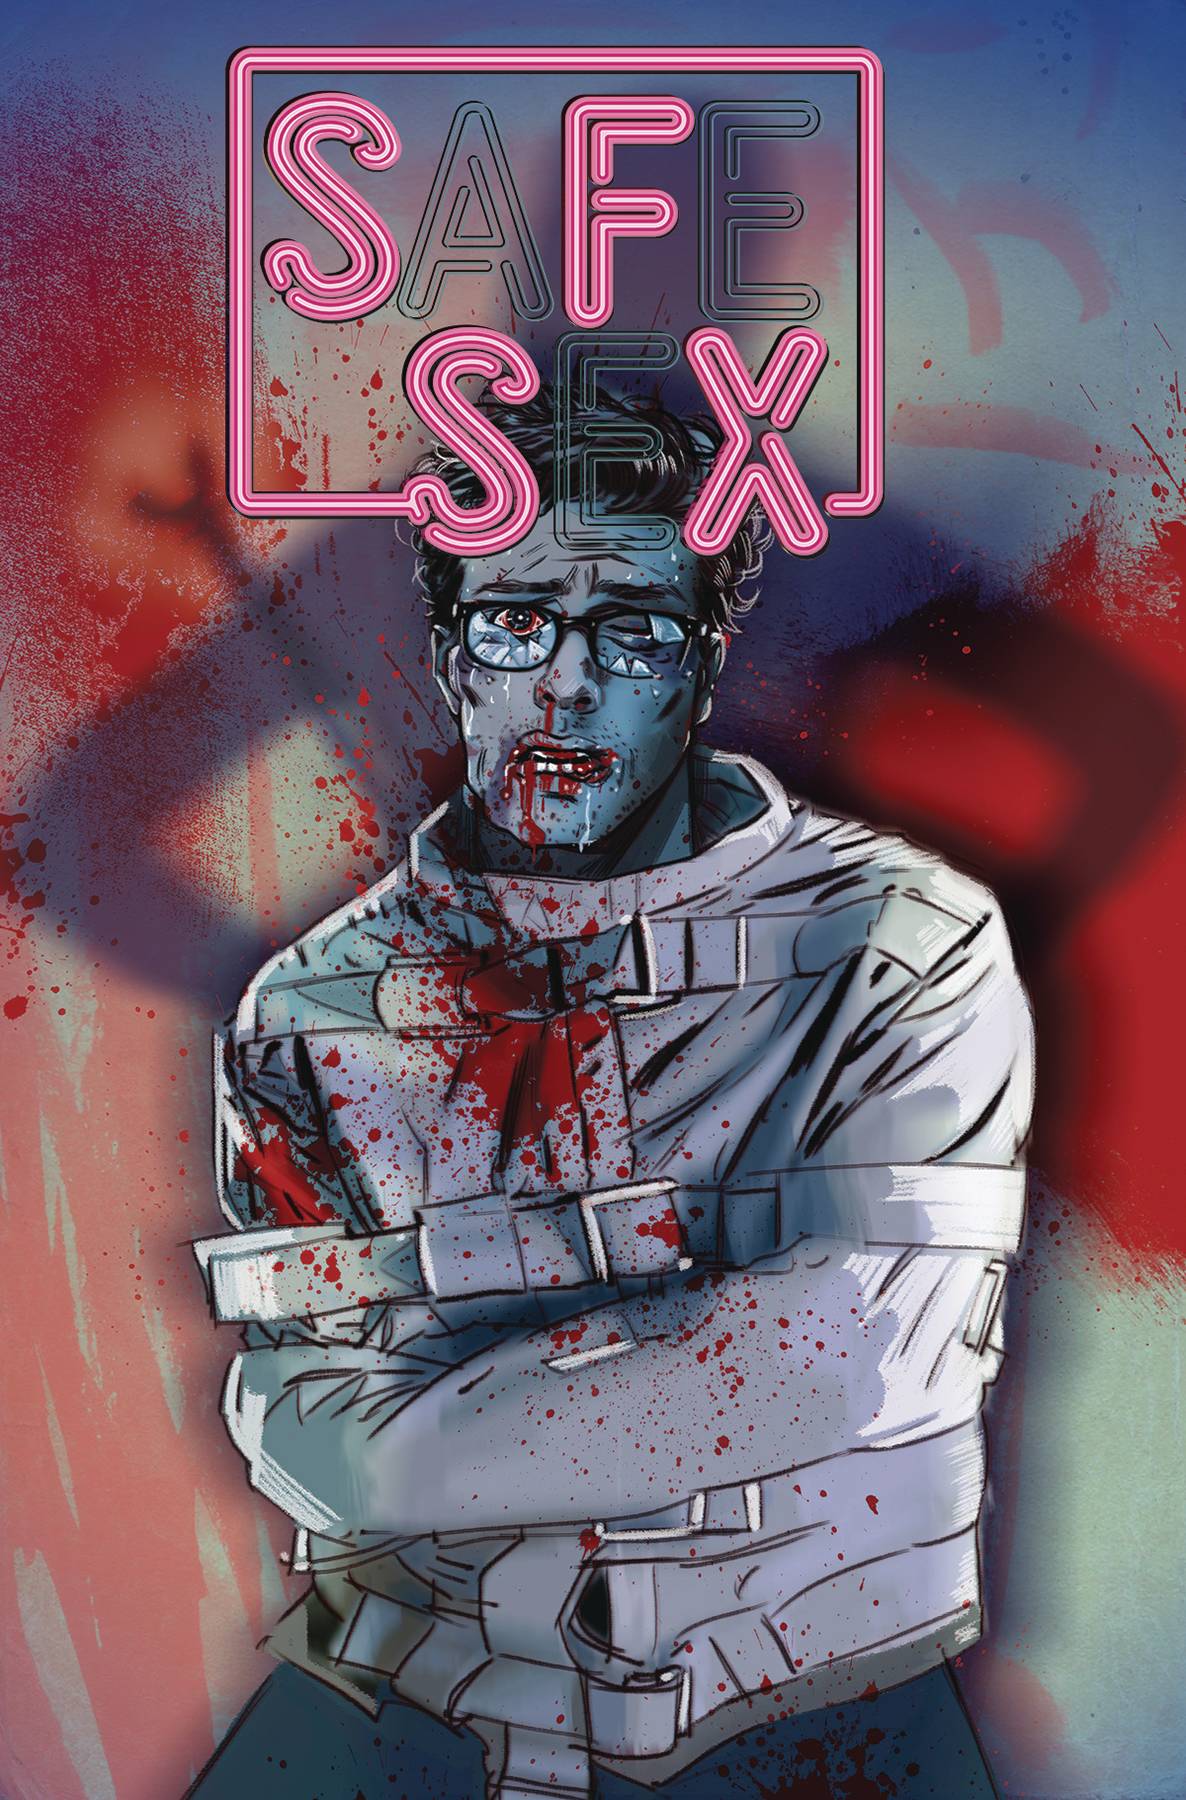 SFSX (Safe Sex) #4 (2019)